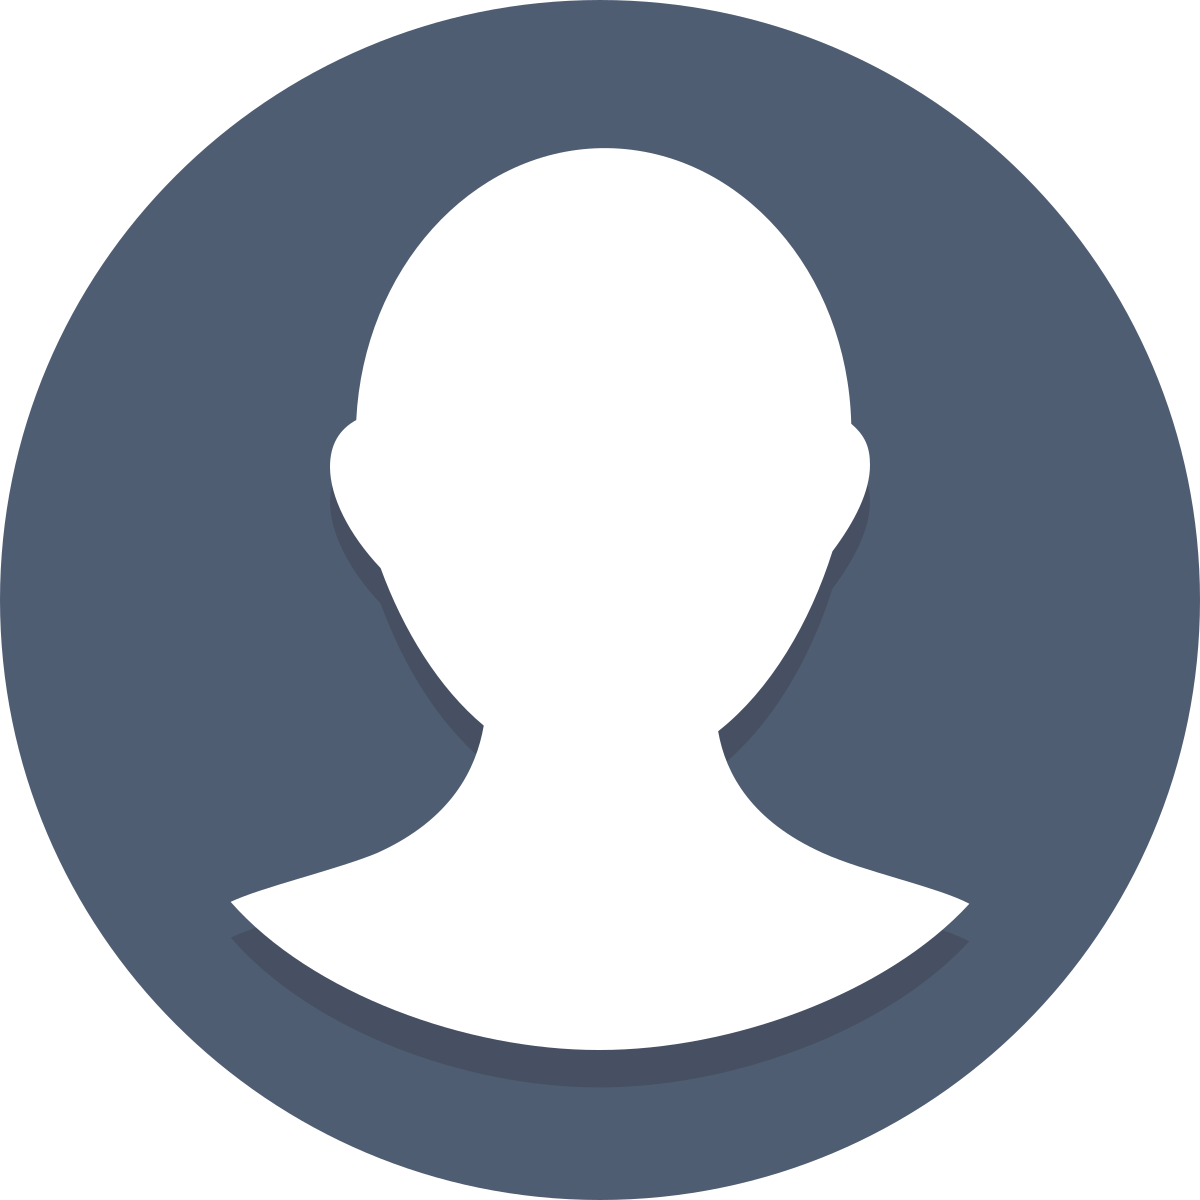 Фото user. Иконка профиля. Изображение профиля. Круглый аватар. Значок аватара.